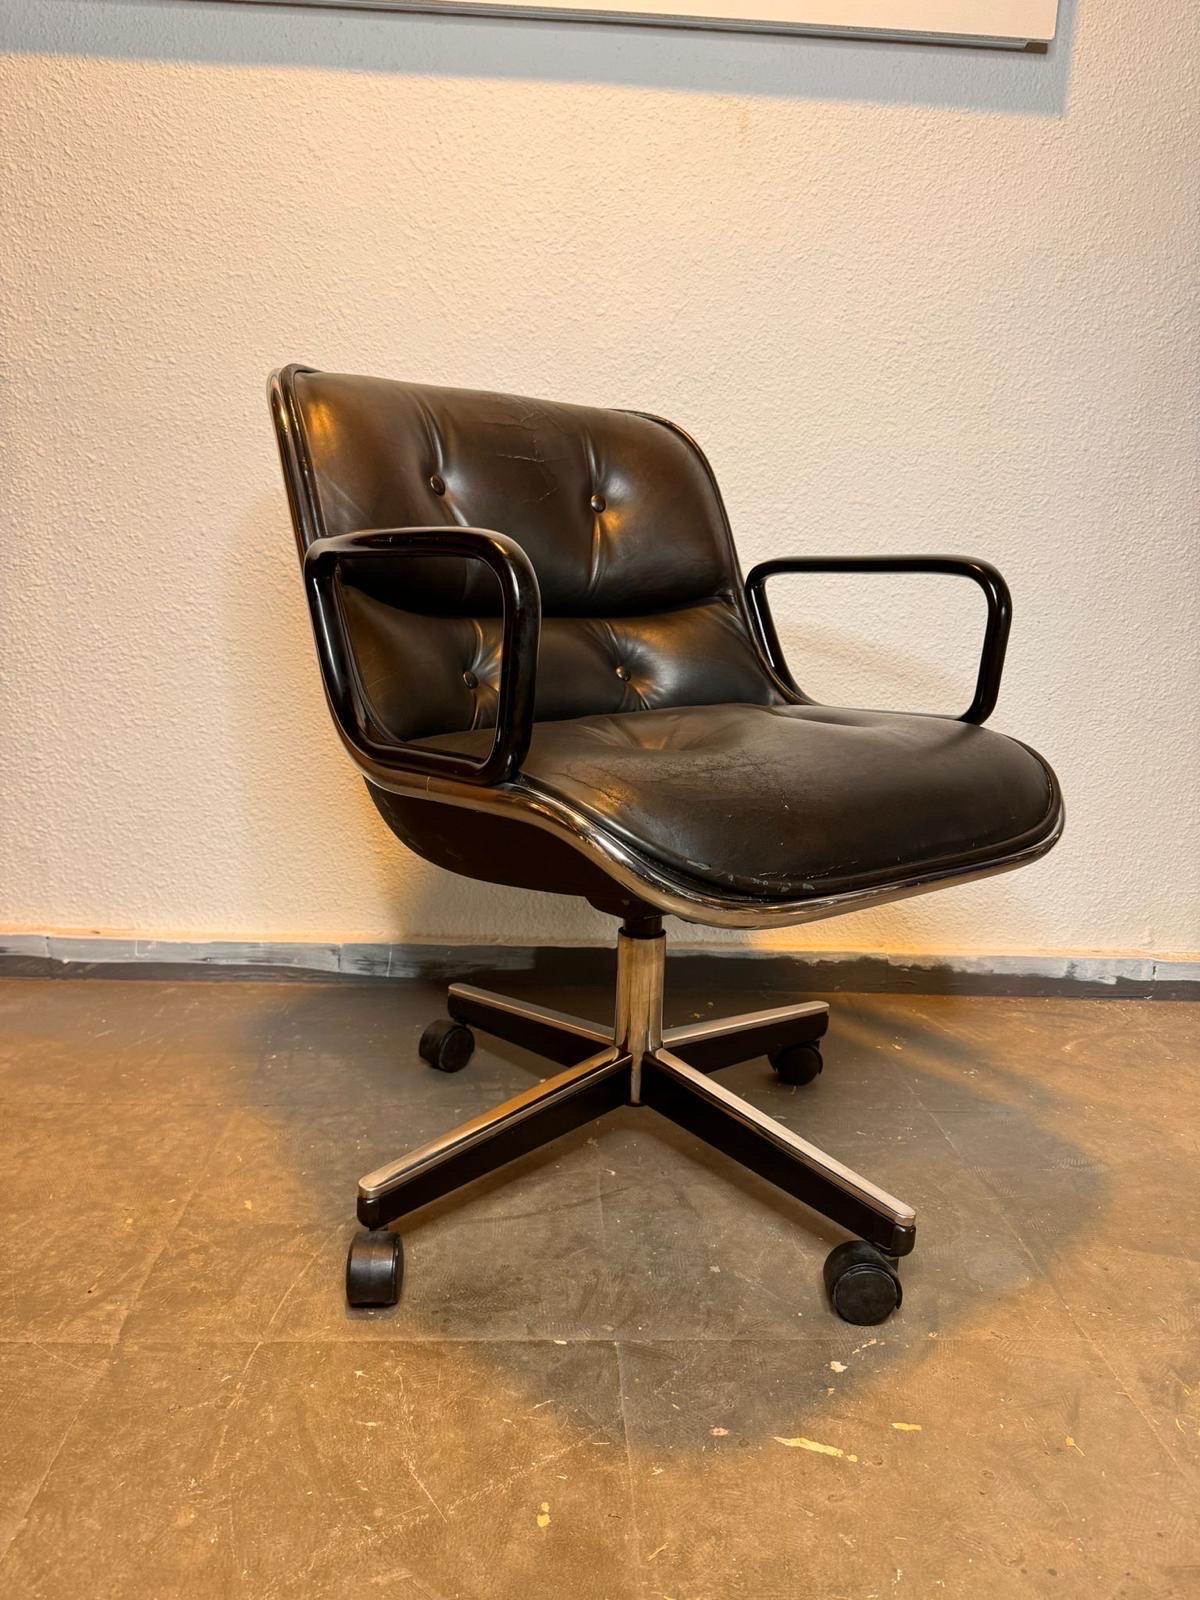 El refinamiento de la silla ejecutiva de mediados del siglo XX de Charles Pollock (1963) se reduce para brindar comodidad, capaz de inspirar grandes ideas en un asiento ergonómicamente intuitivo. Pollock, que trabajó en la oficina de George Nelson